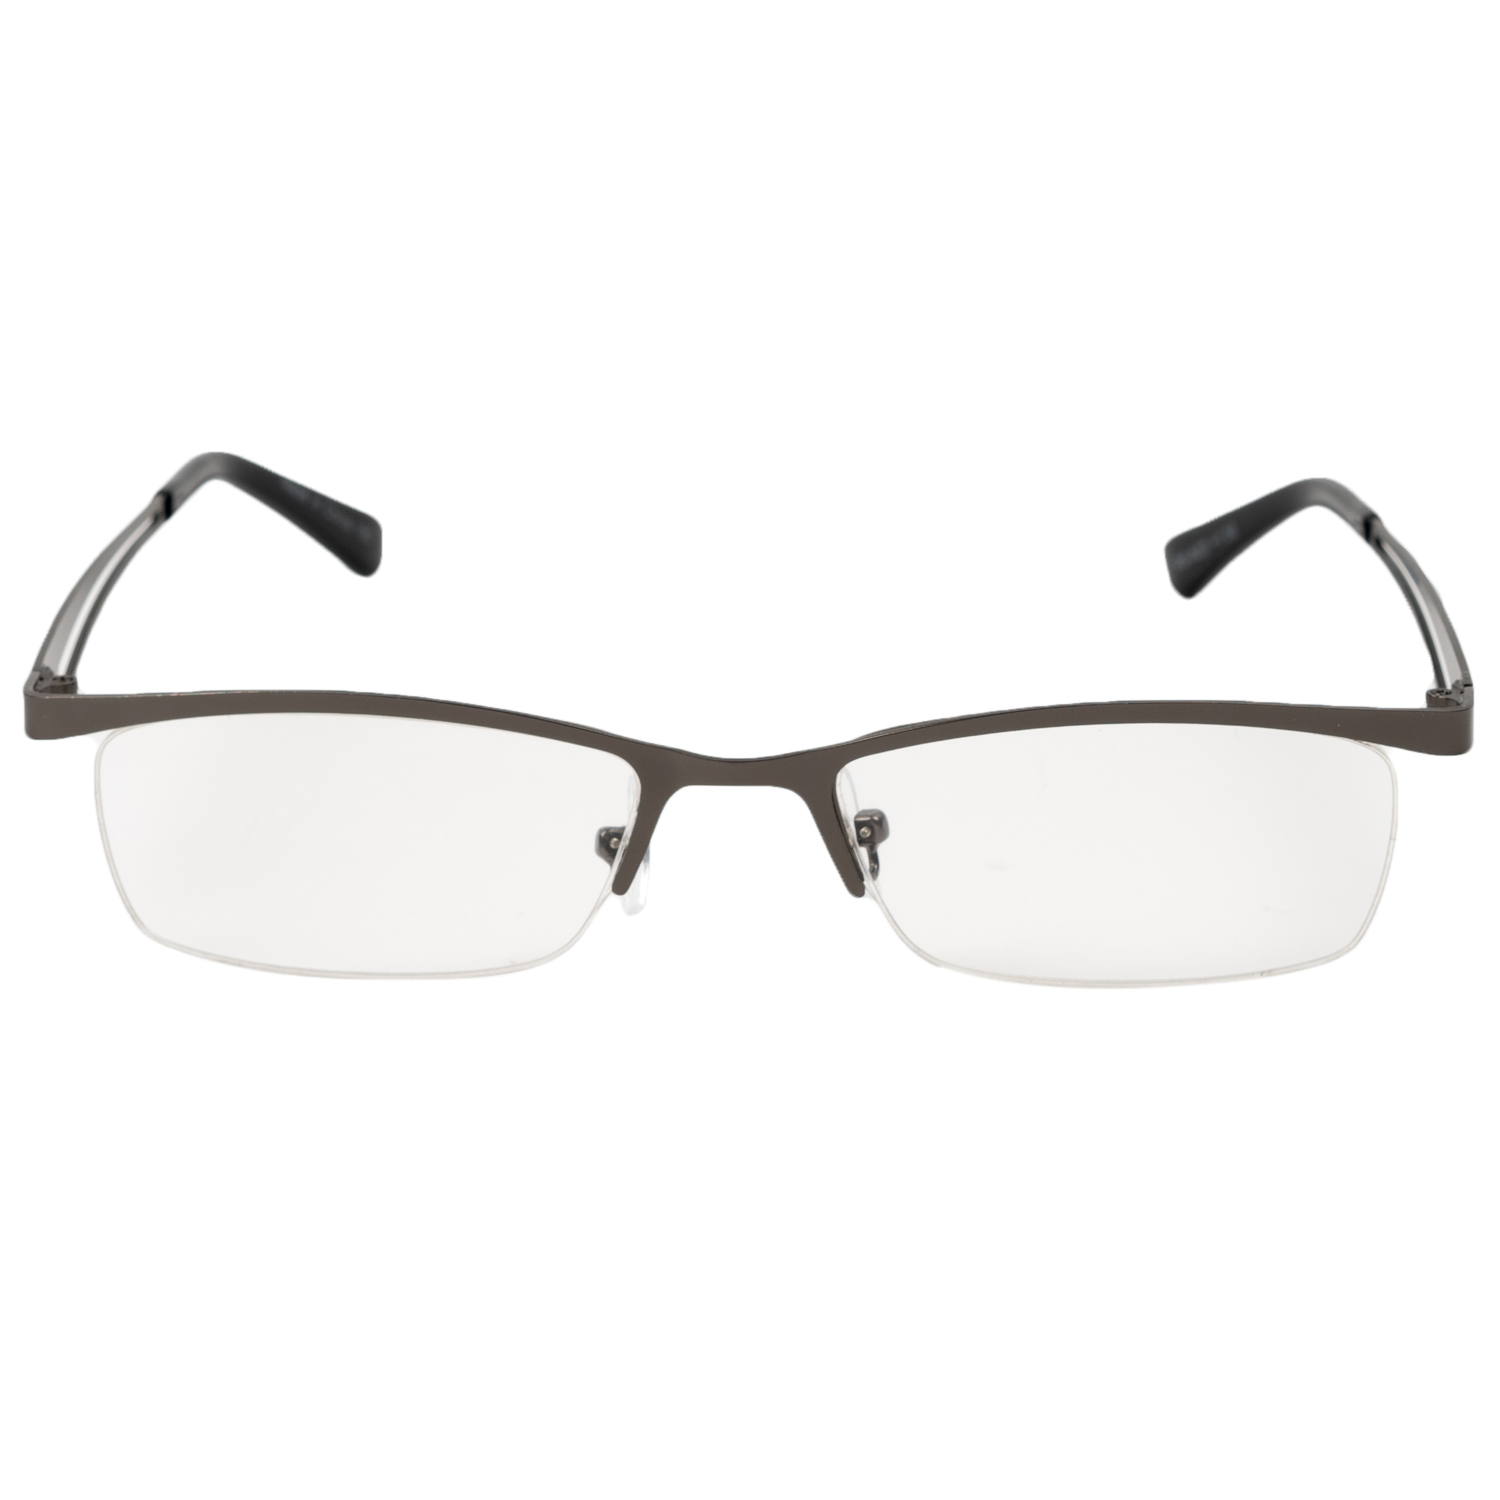 保土ヶ谷電子販売 RG-F04 2.0 オリジナル老眼鏡 度数 +2.0 eN3qASKoO0, メガネ、老眼鏡 - www.velver.hu